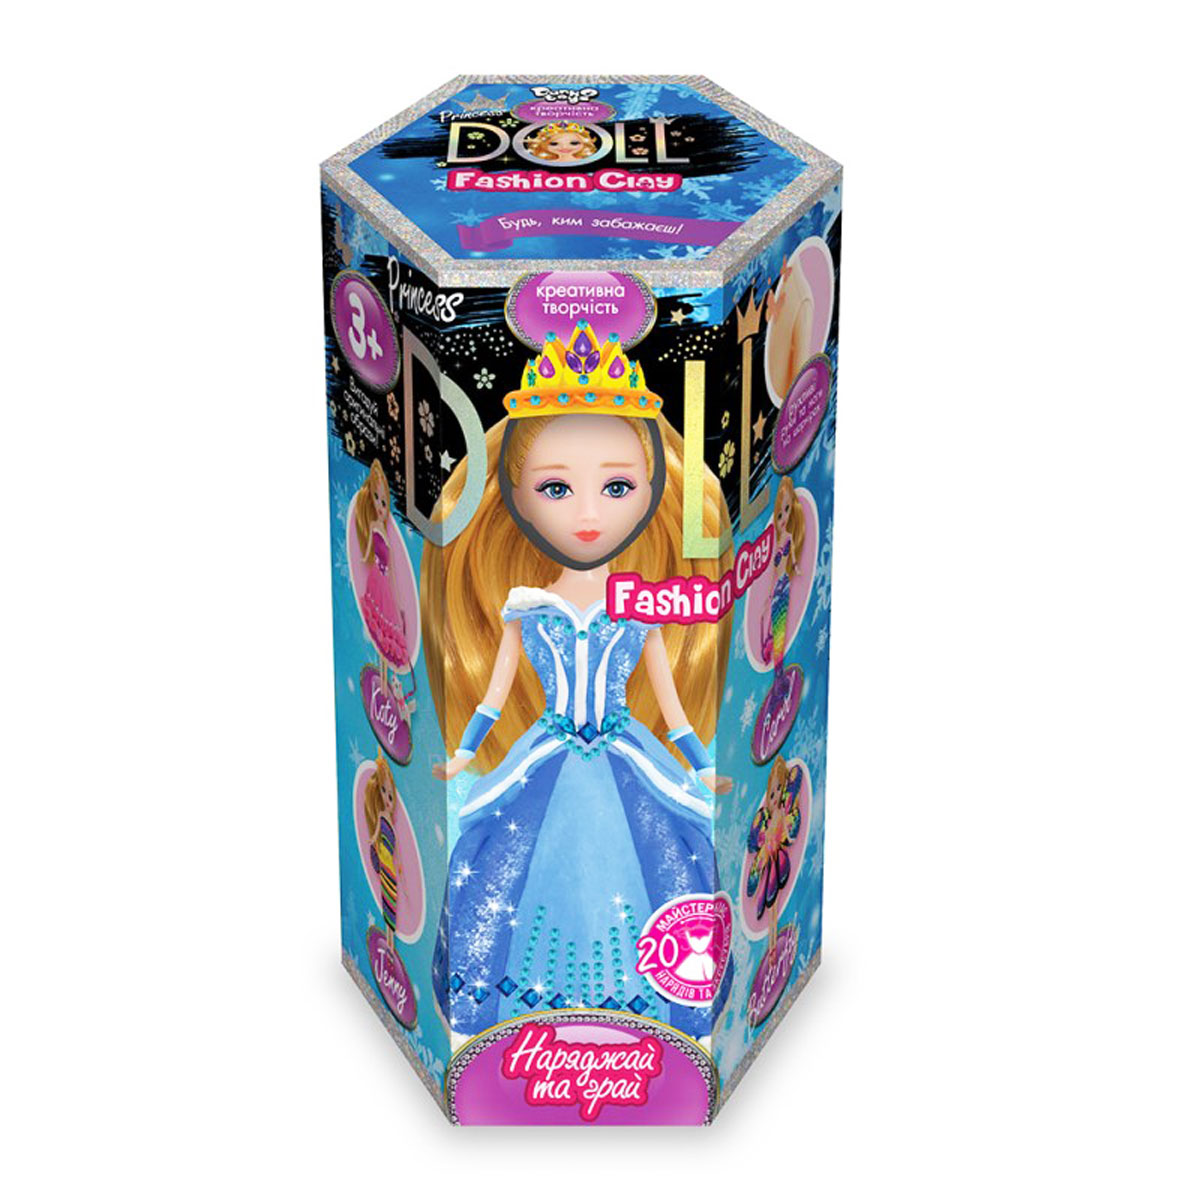 Набор для творчества 'Princess doll' пластилин украинский язык